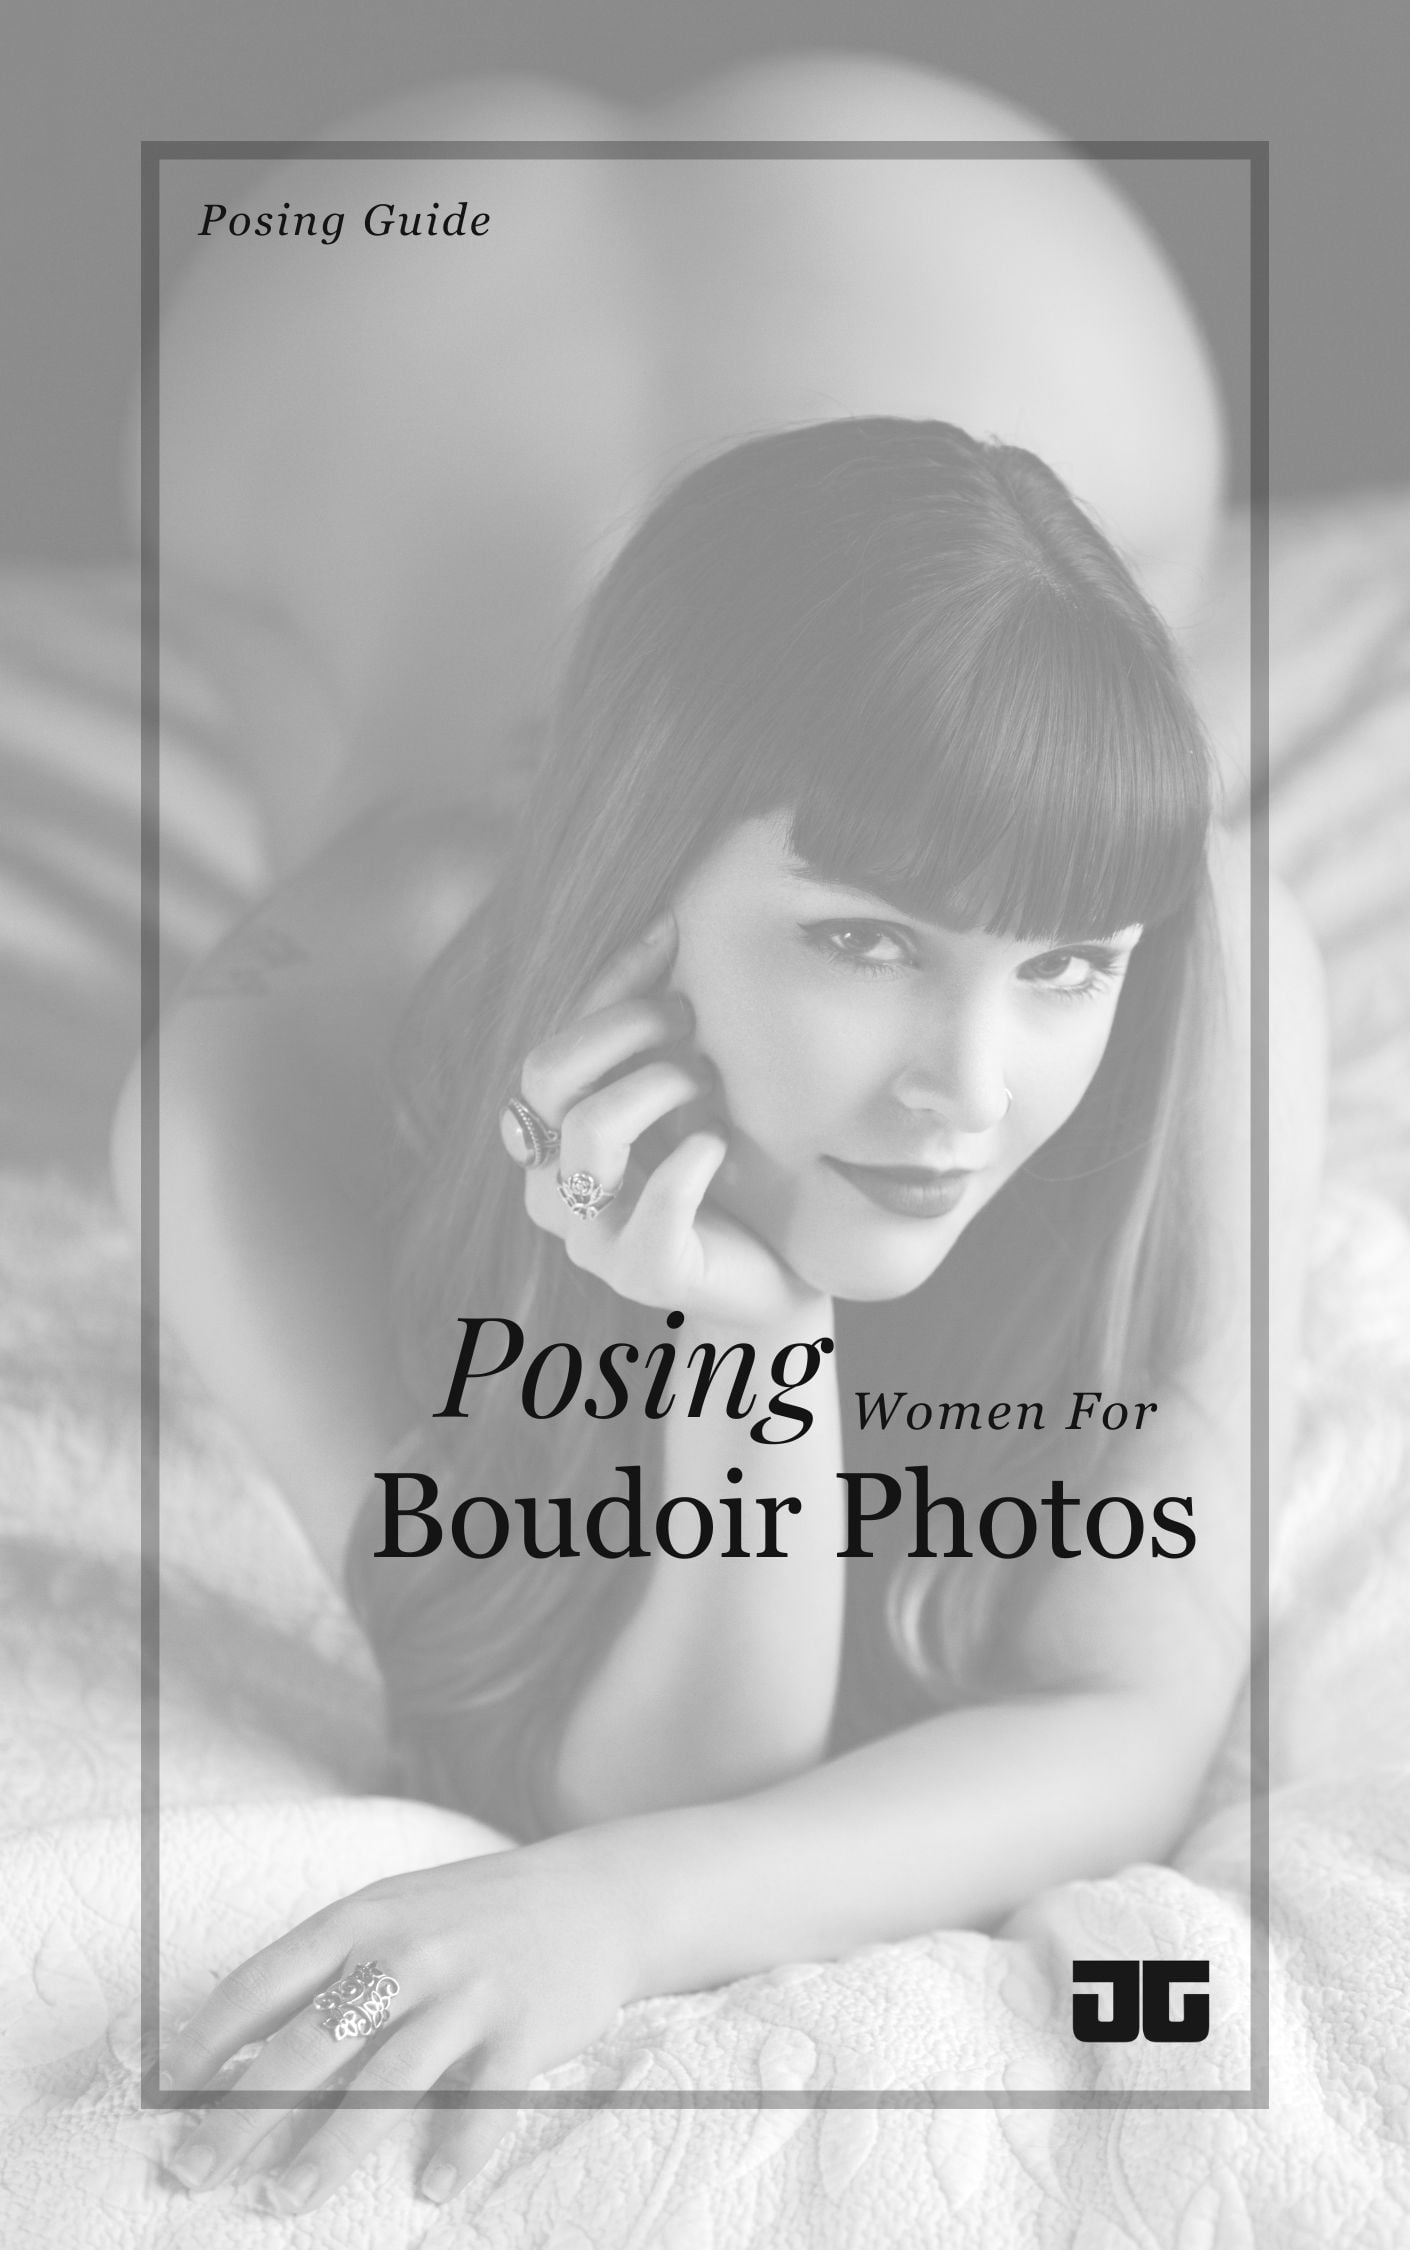 boudoir poses pdf